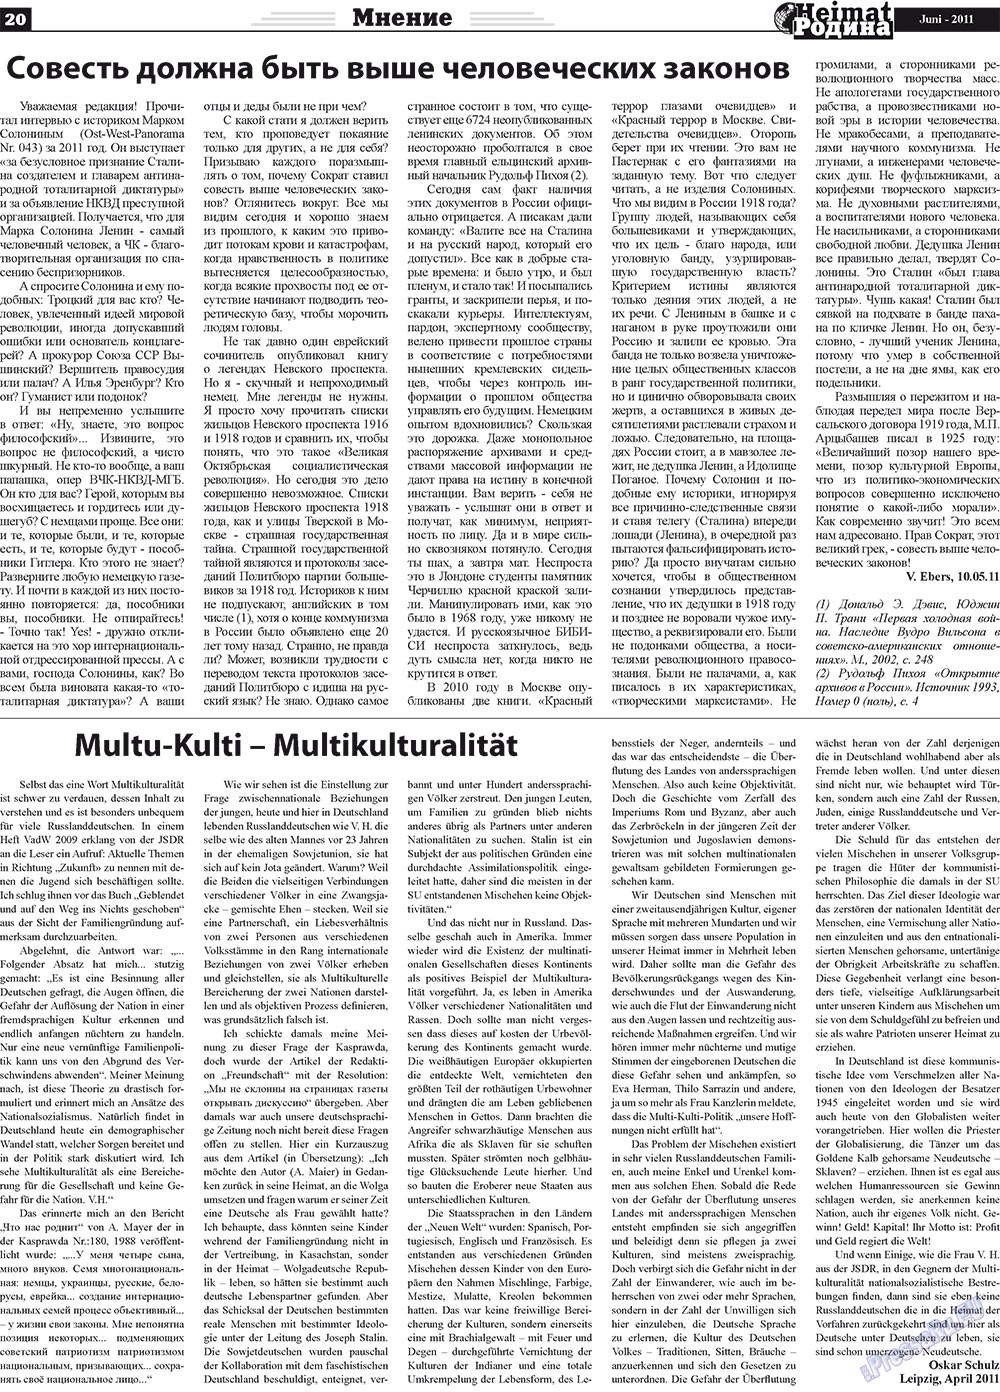 Heimat-Родина (газета). 2011 год, номер 6, стр. 20